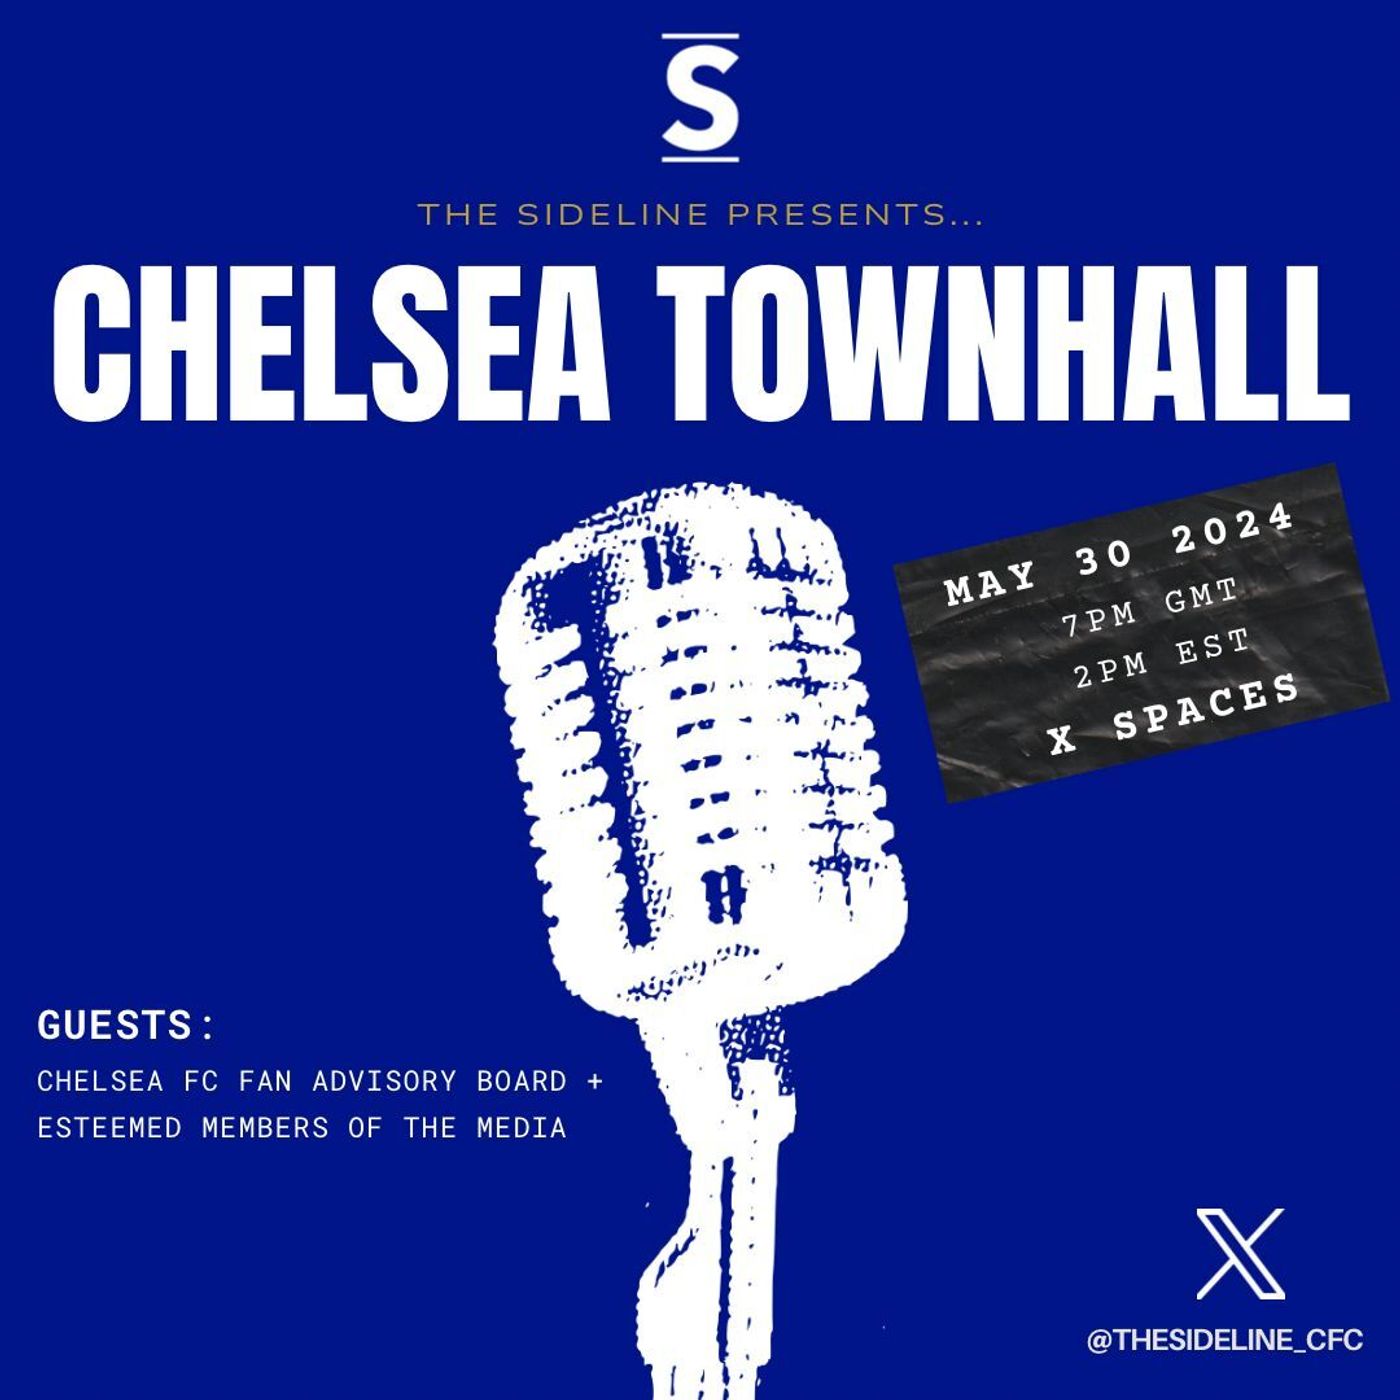 Chelsea Townhall x Chelsea Fan Advisory Board